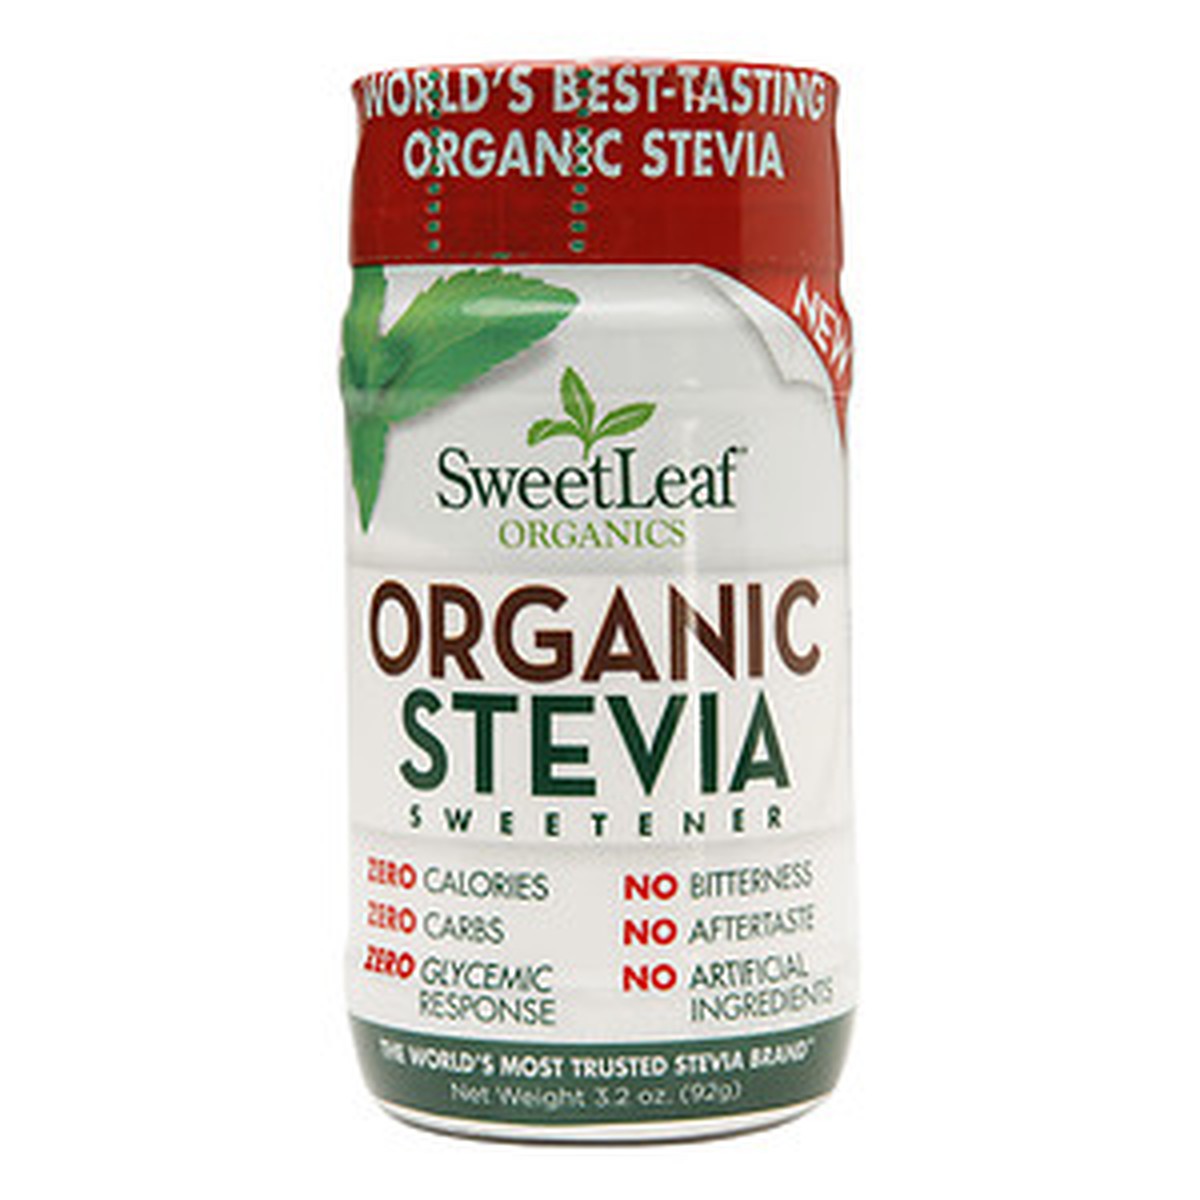 SweetLeaf Organic Stevia Sweetener Shaker (1x3.2 OZ)